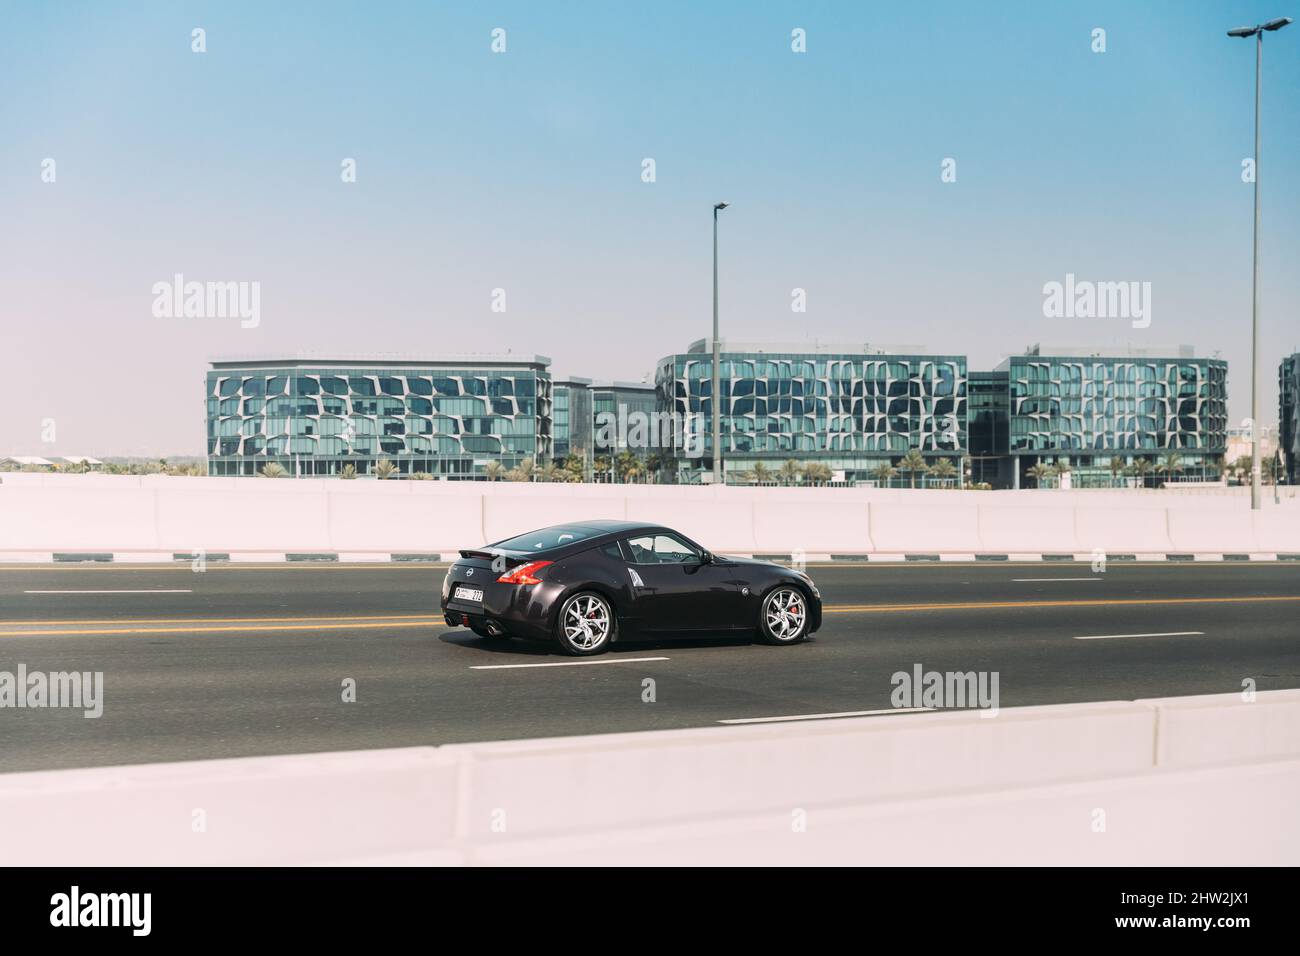 Dubai, Emirati Arabi Uniti - 28 maggio 2021: Black Nissan 350Z auto veloce in moto su strada a Dubai. Nissan Fairlady Z Z33 auto sportive in moto Foto Stock